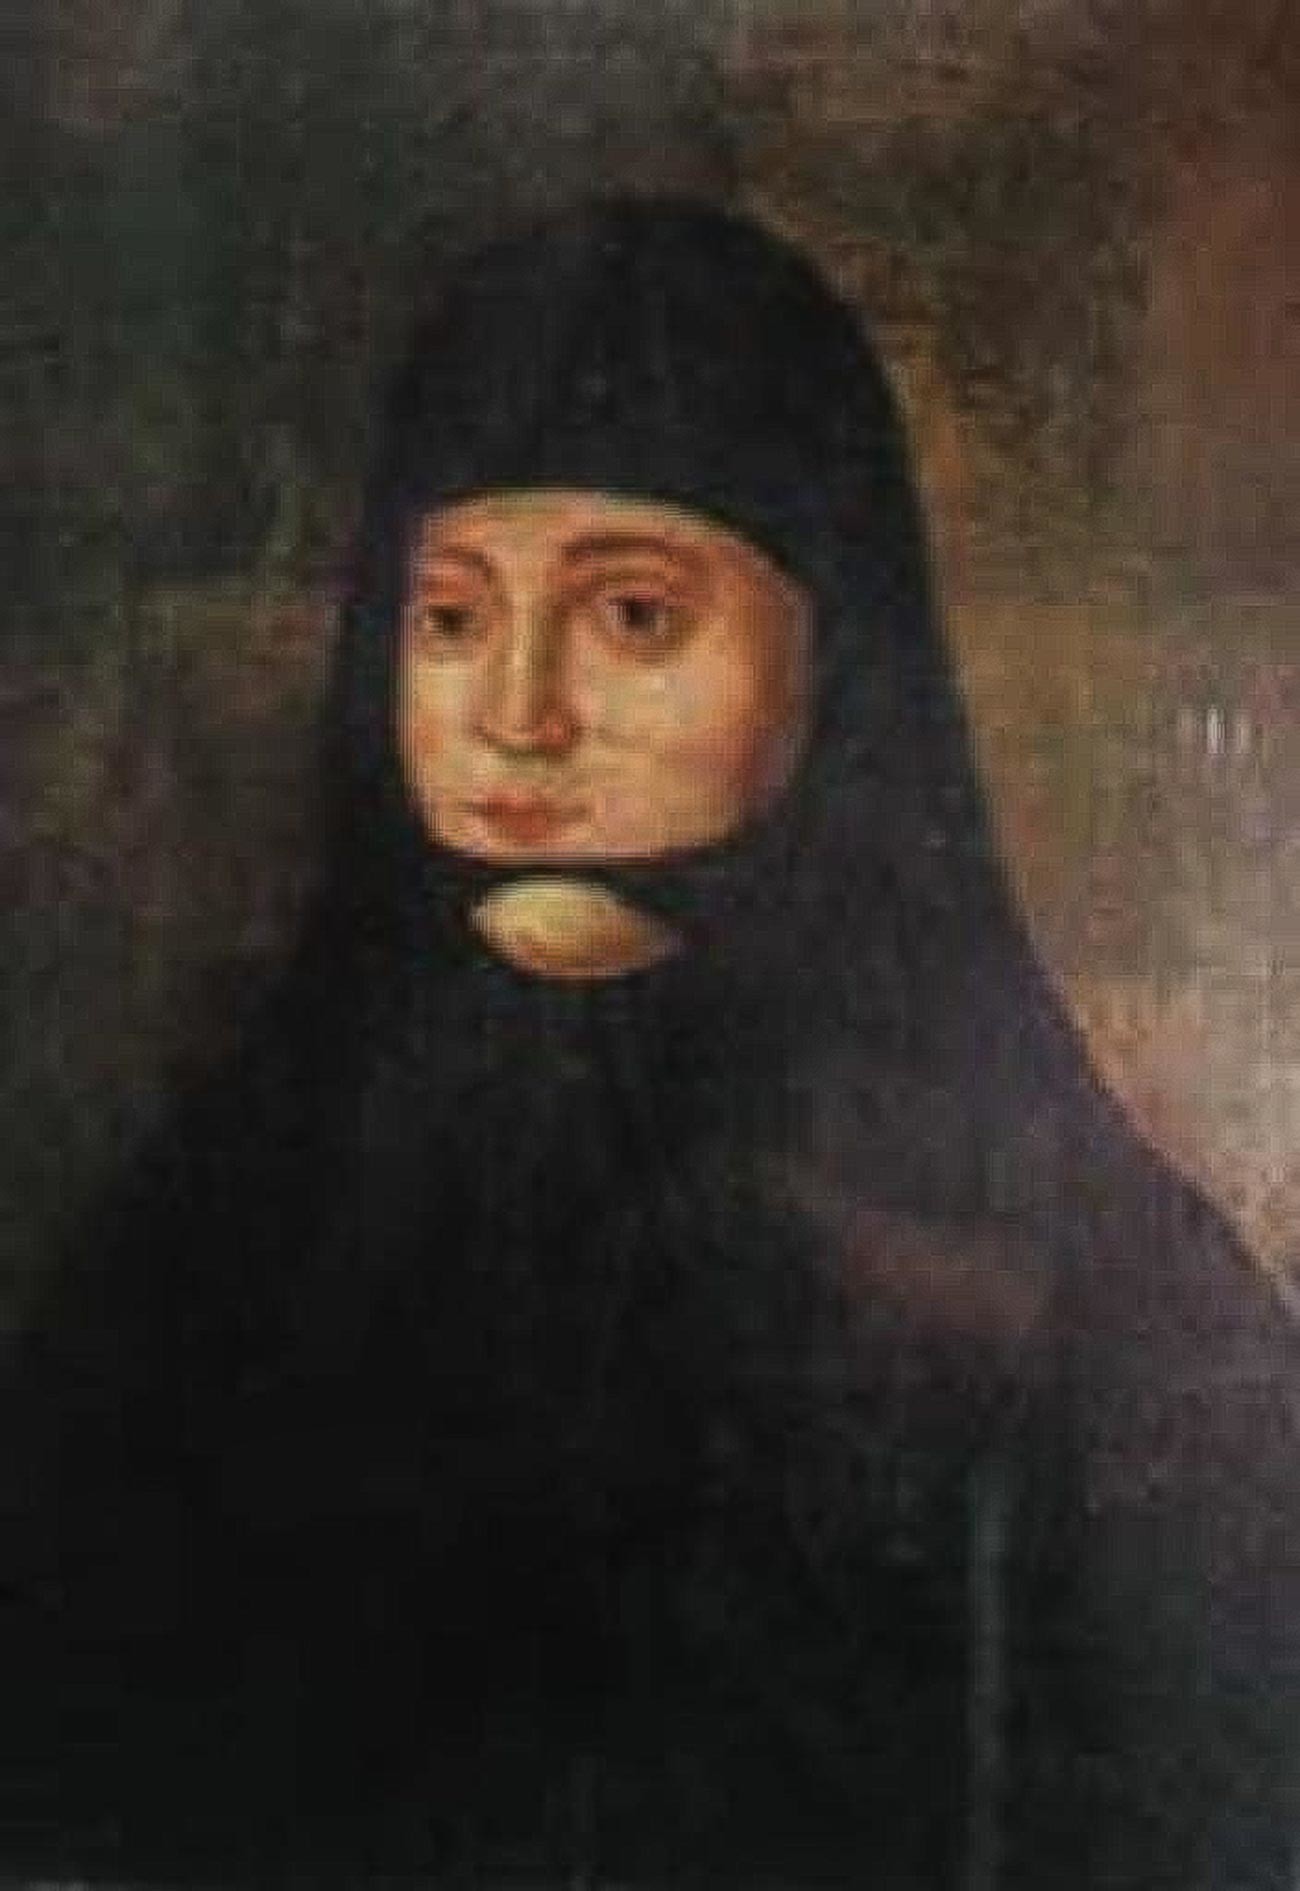 Соломонијa Сабуровa

